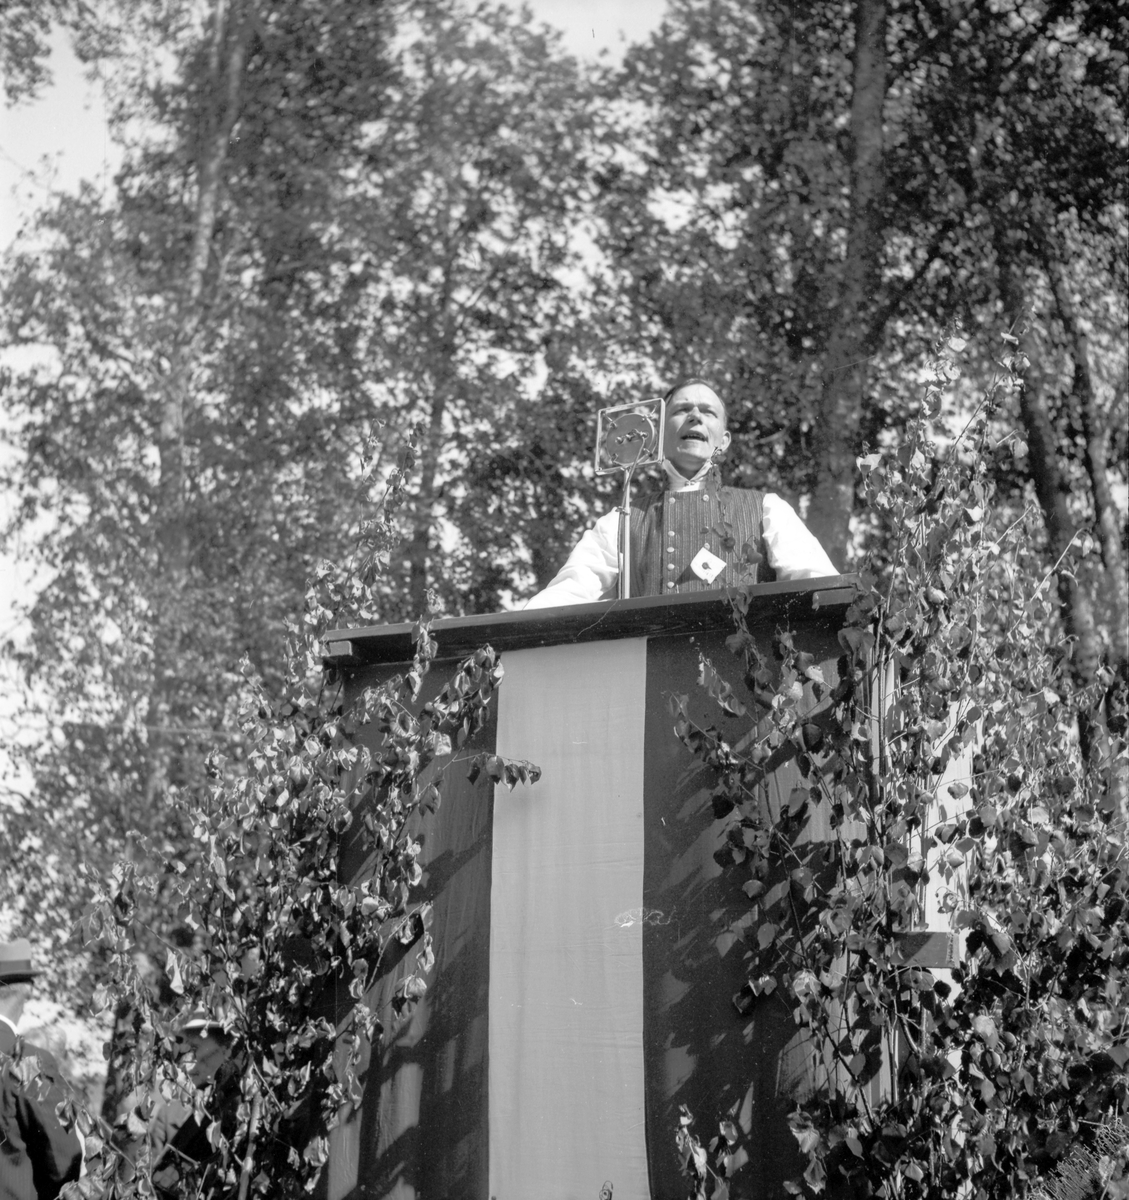 Bondeförbundet Årsstämma, Åby Gård. Bondeförbundets ordförande Axel Pehrsson-Bramstorp. Juni 1939



